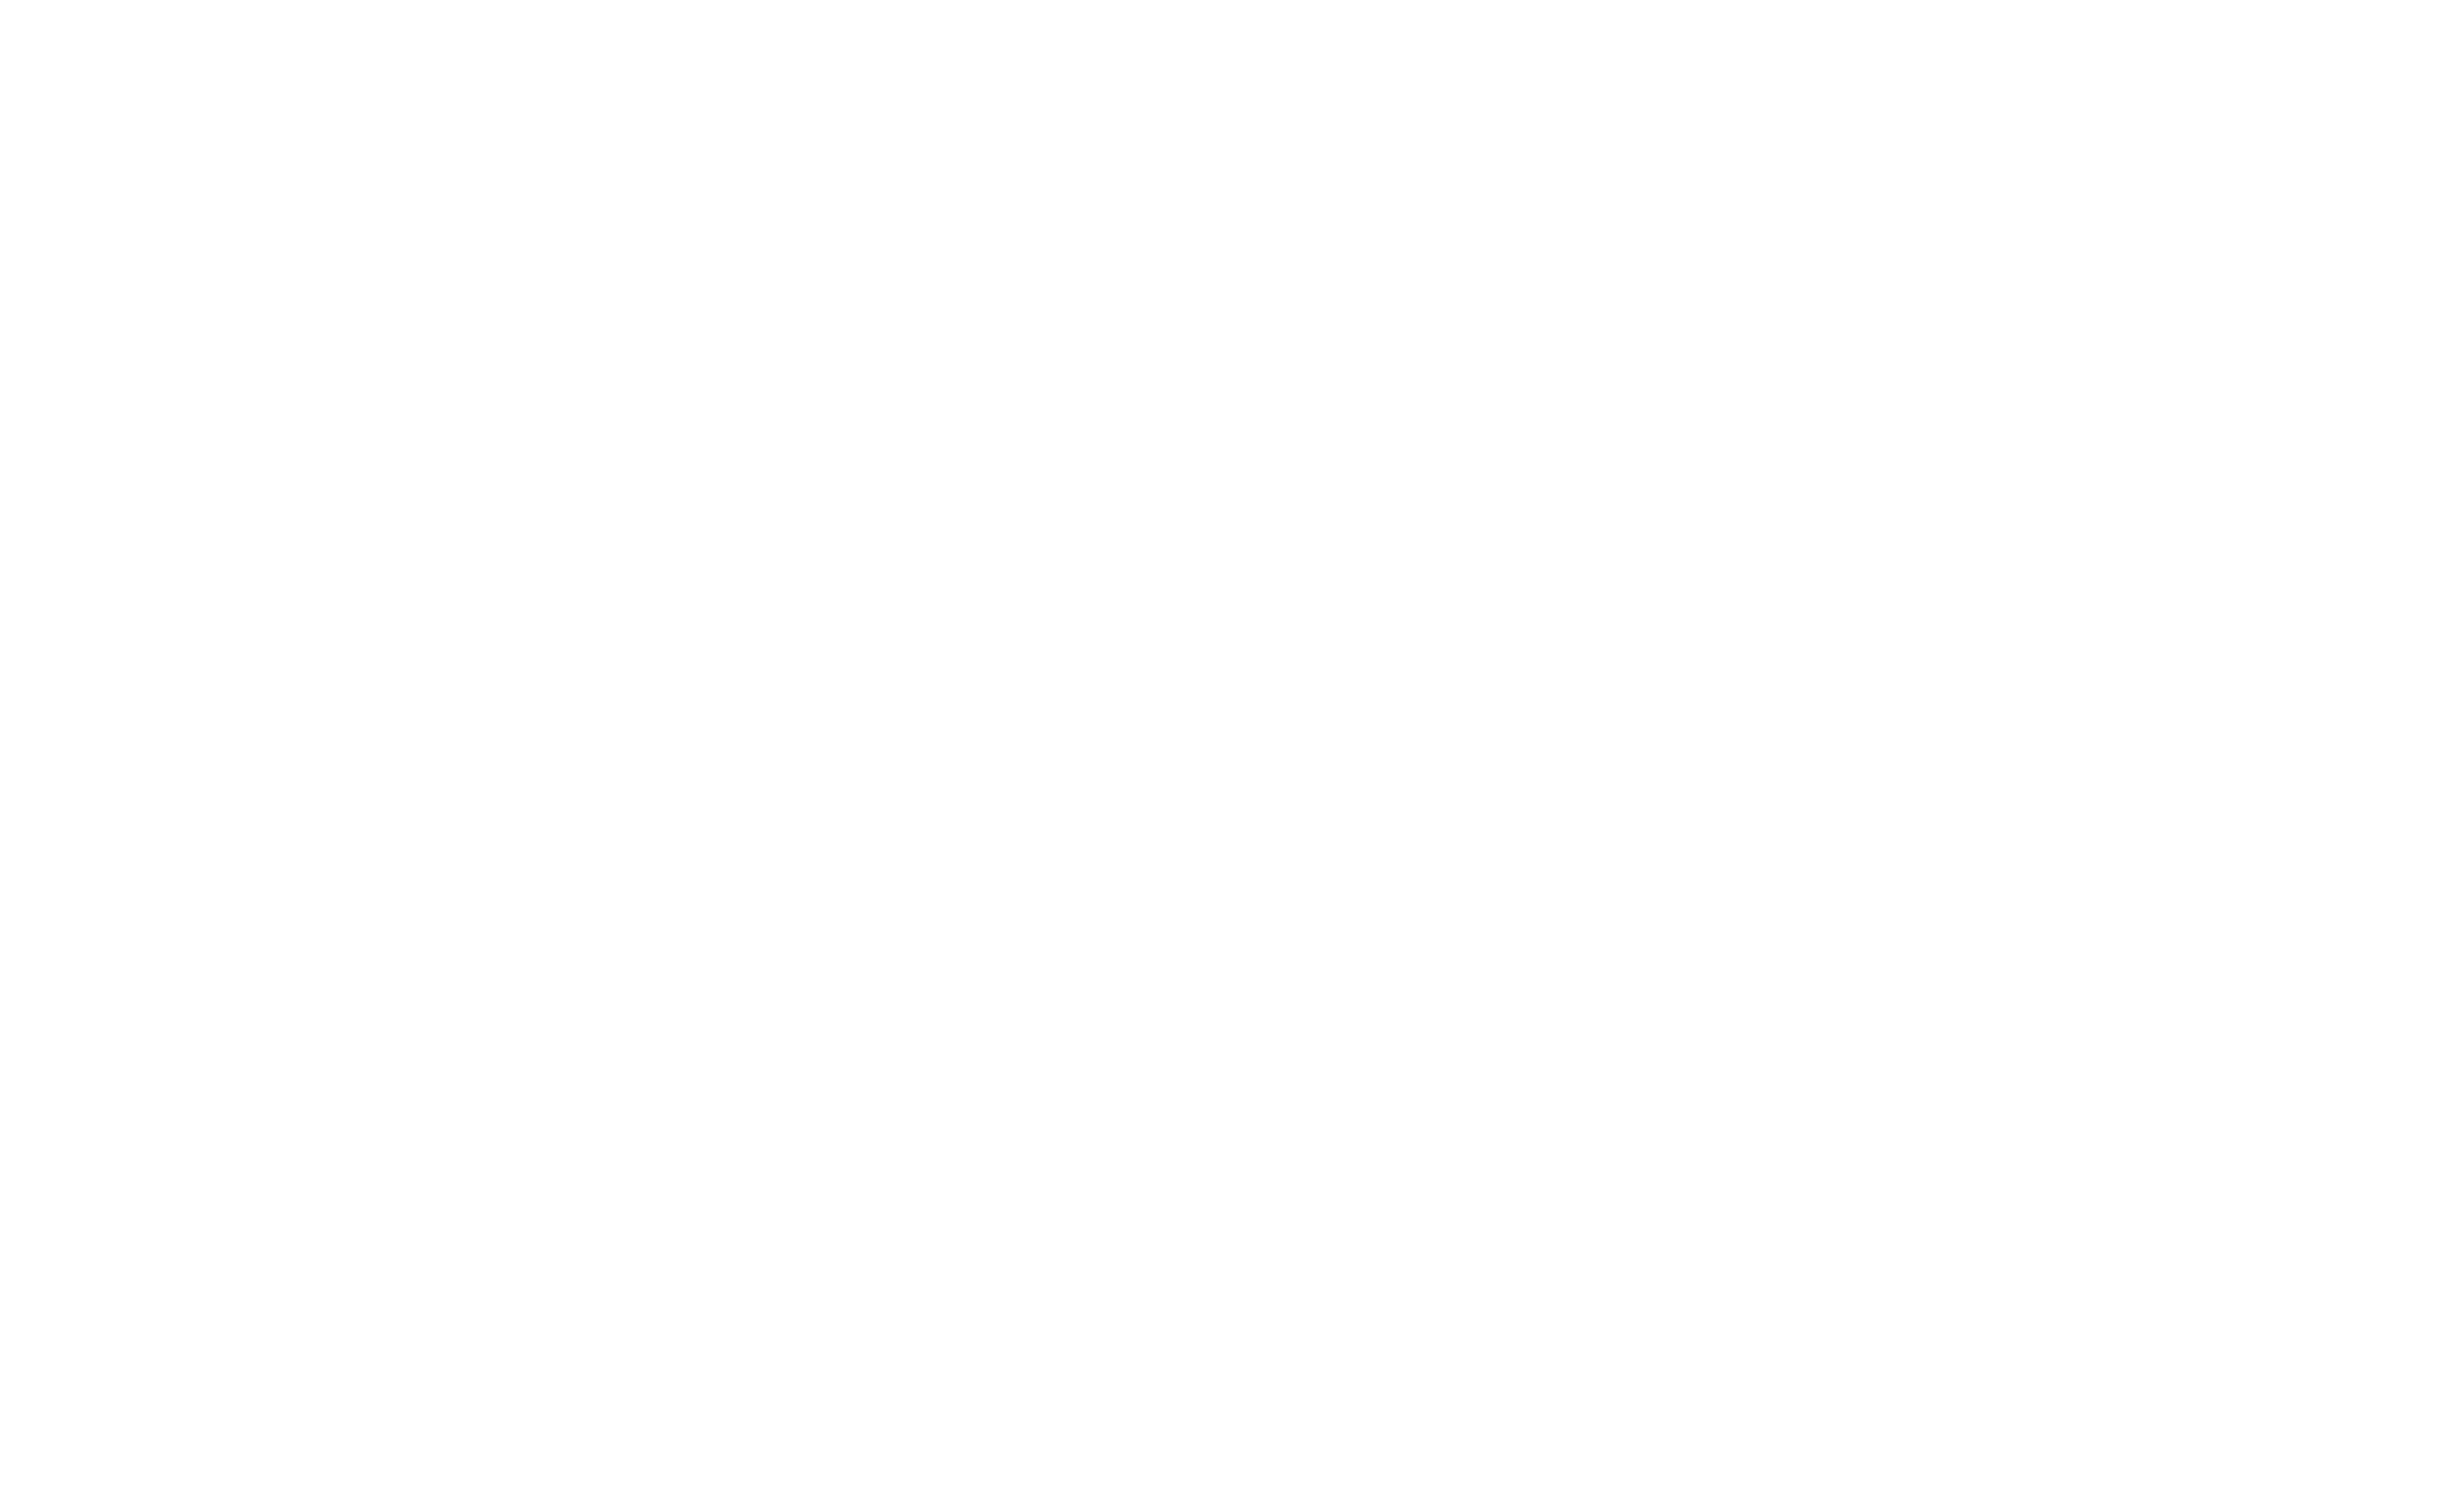 Ike Logo